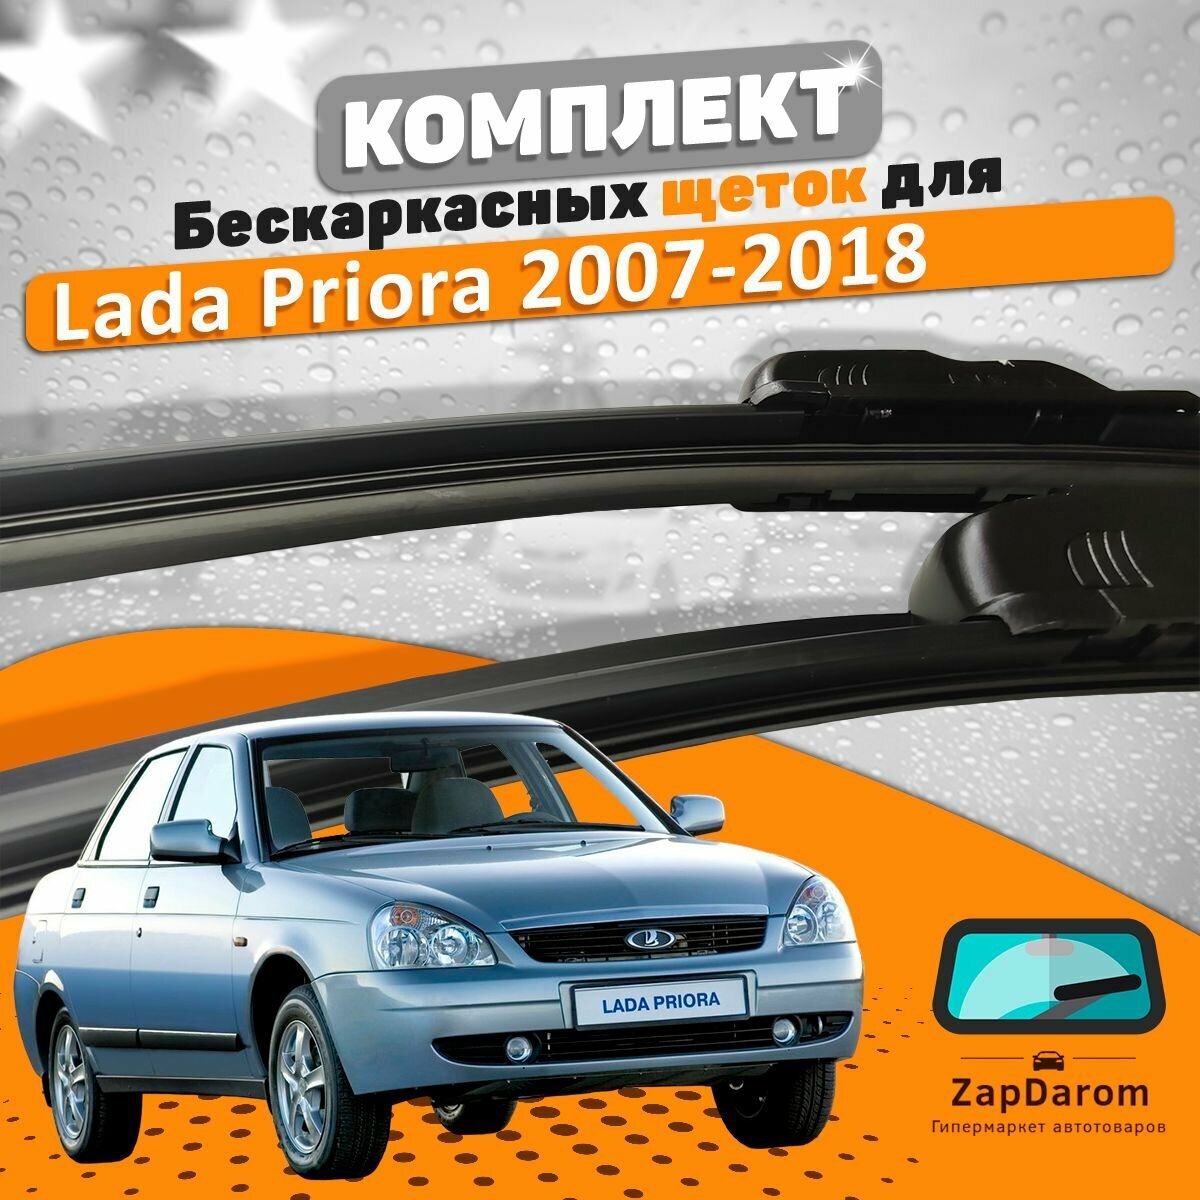 Щетки комплект Lada Priora 2007-2018 (530 и 500 мм) / Дворники Лада Приора